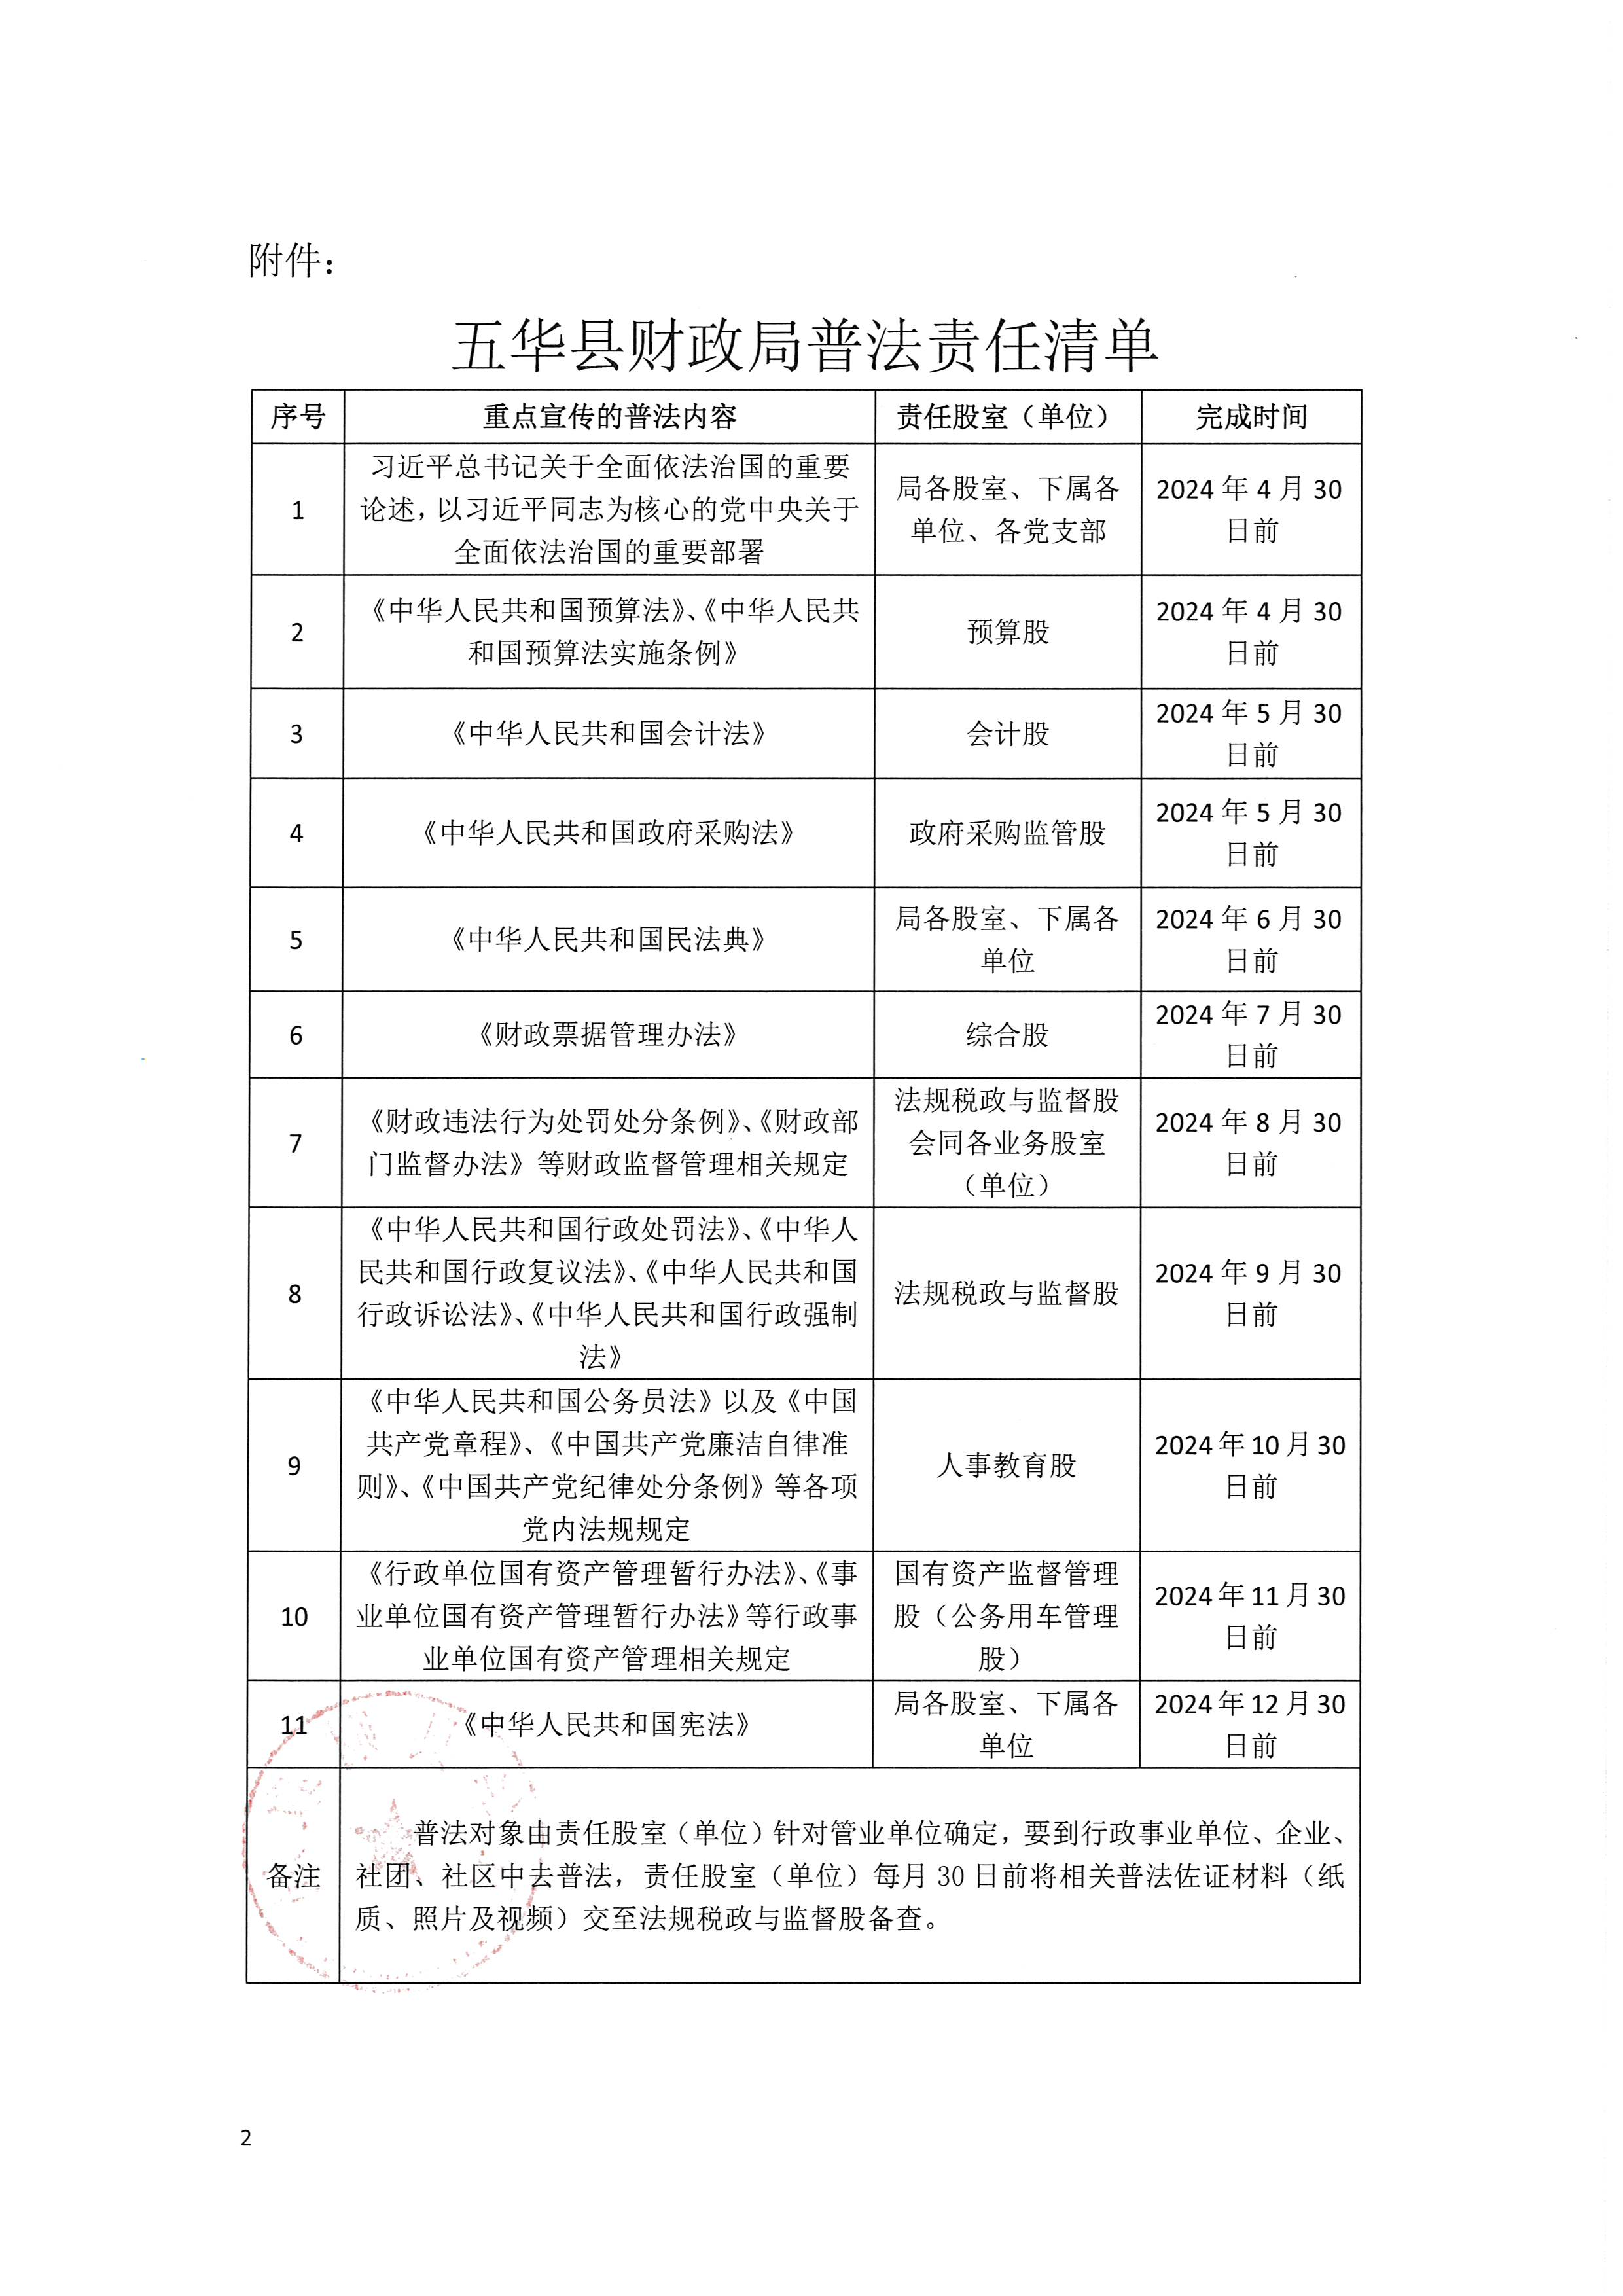 关于印发《五华县财政局2024年普法责任清单》的通知_页面_2.jpg